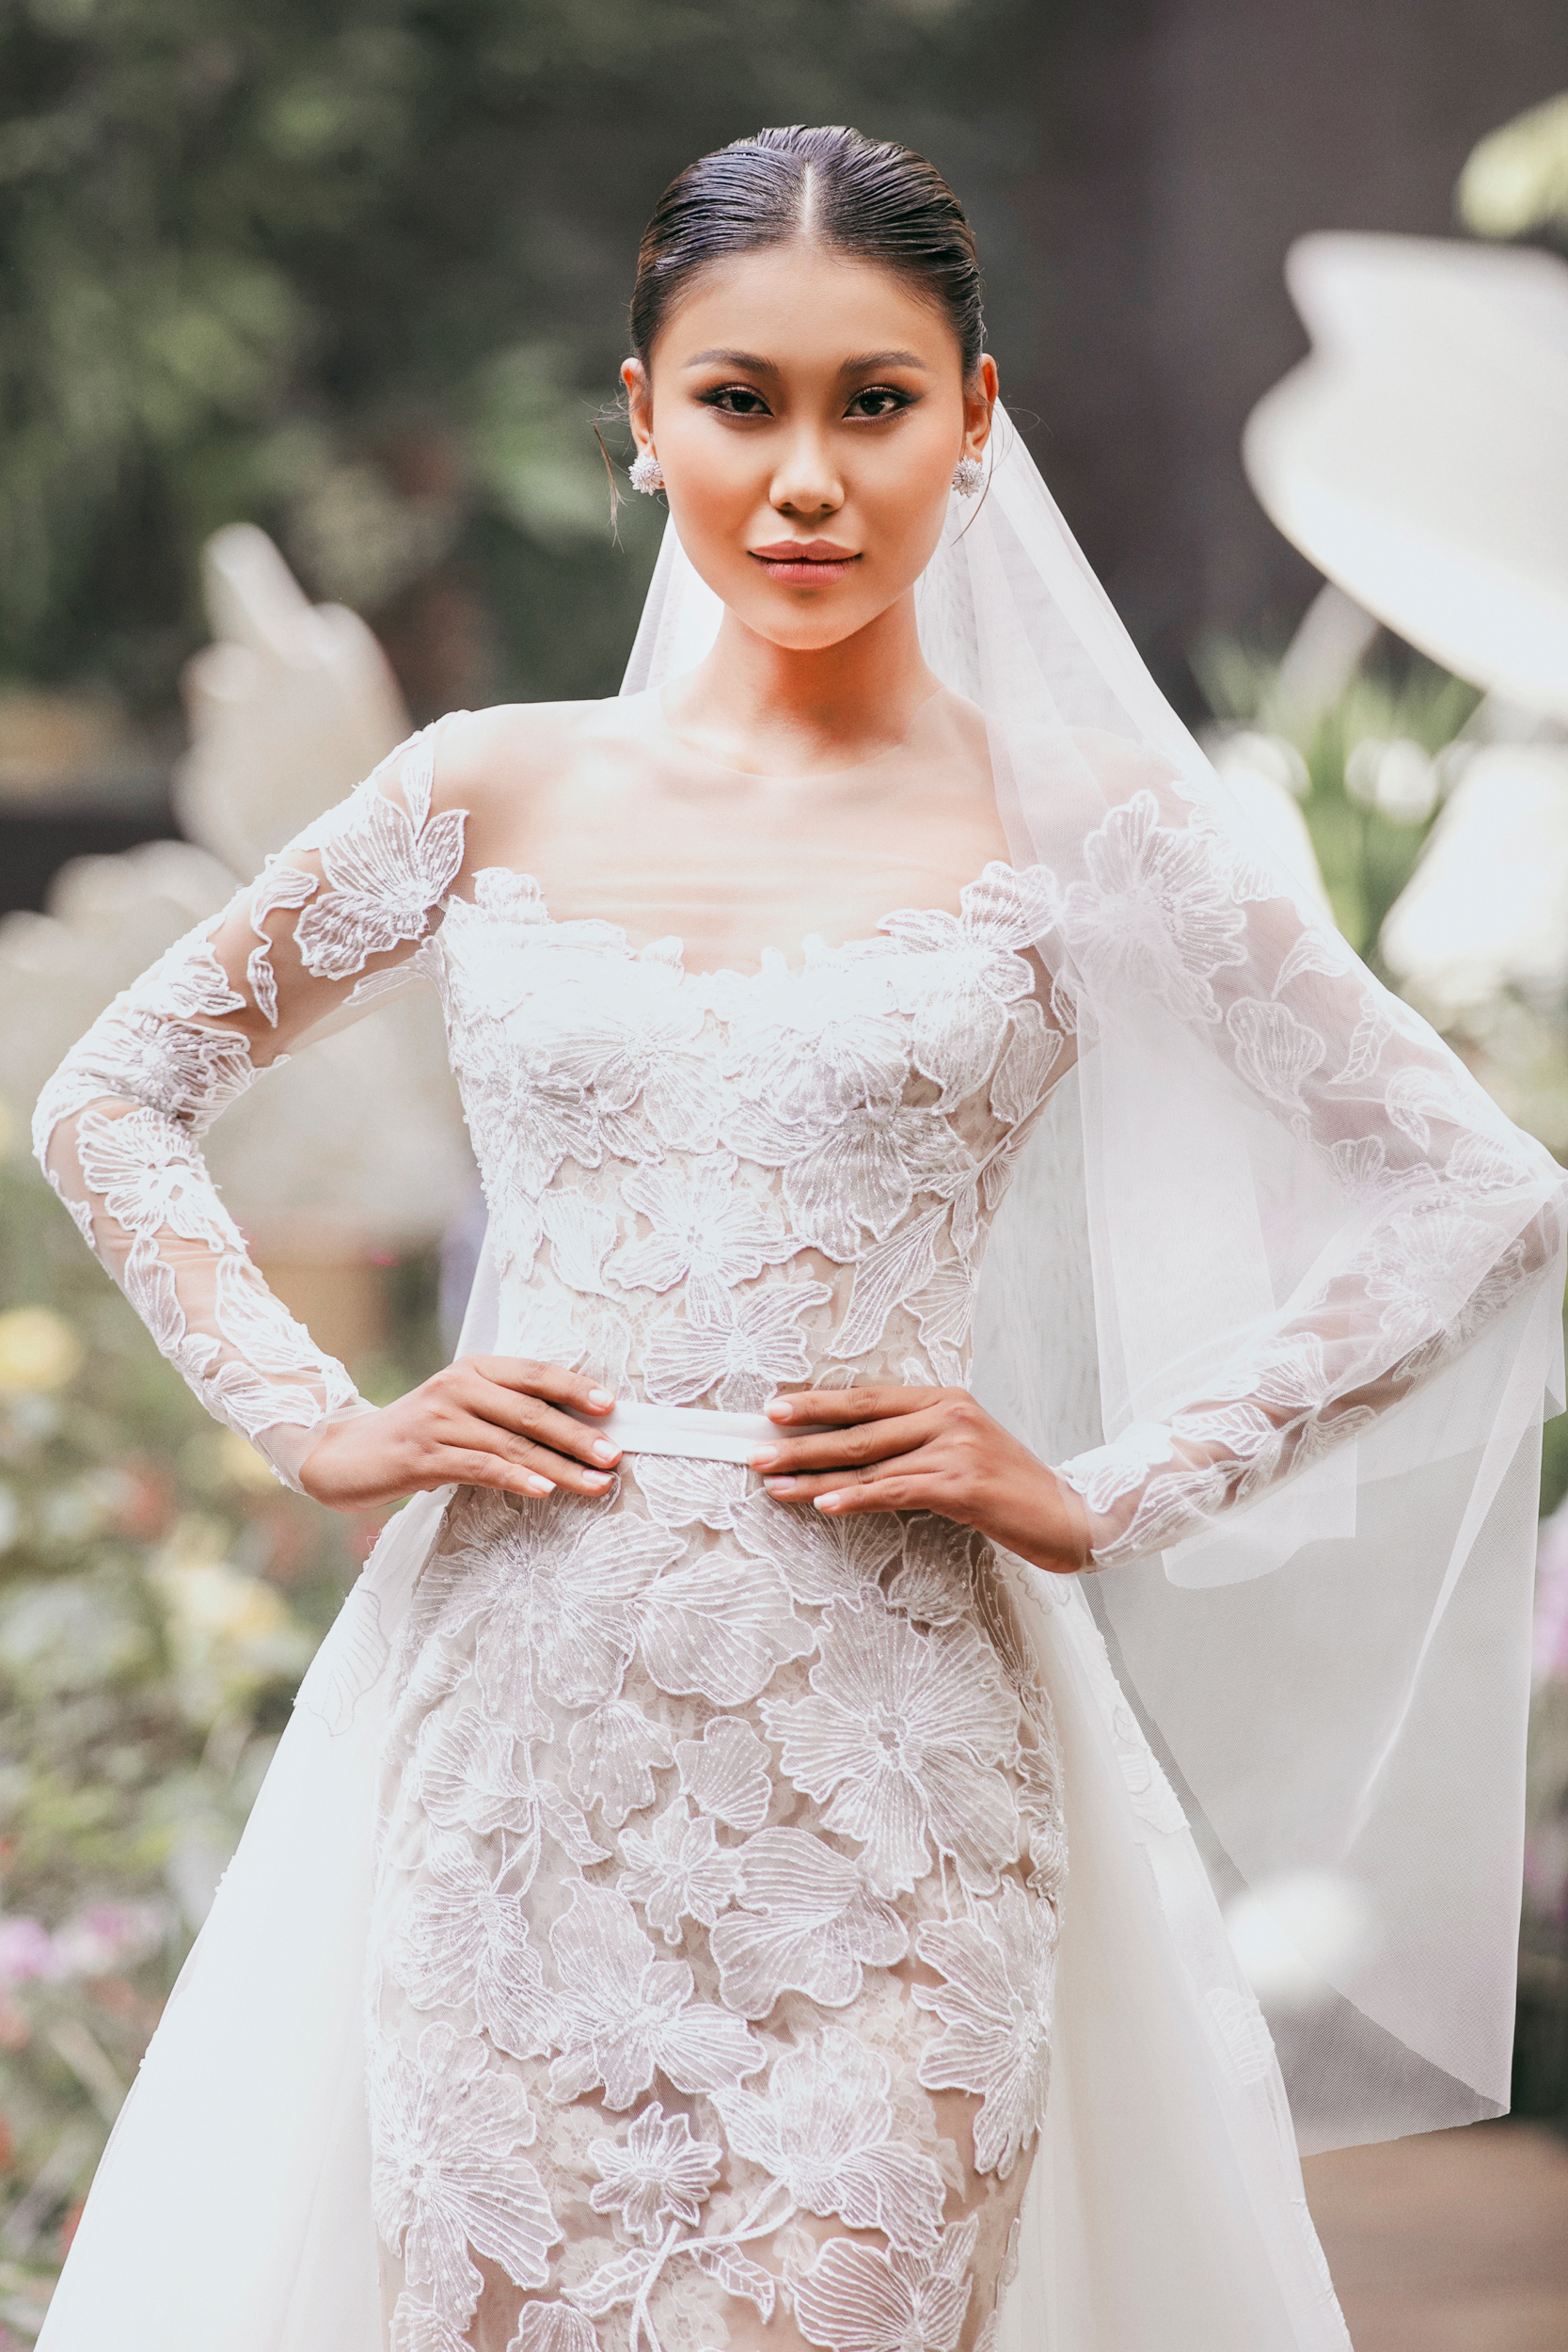 Hoa hậu Ngọc Châu quyến rũ khi mặc váy cưới - Ảnh 11.